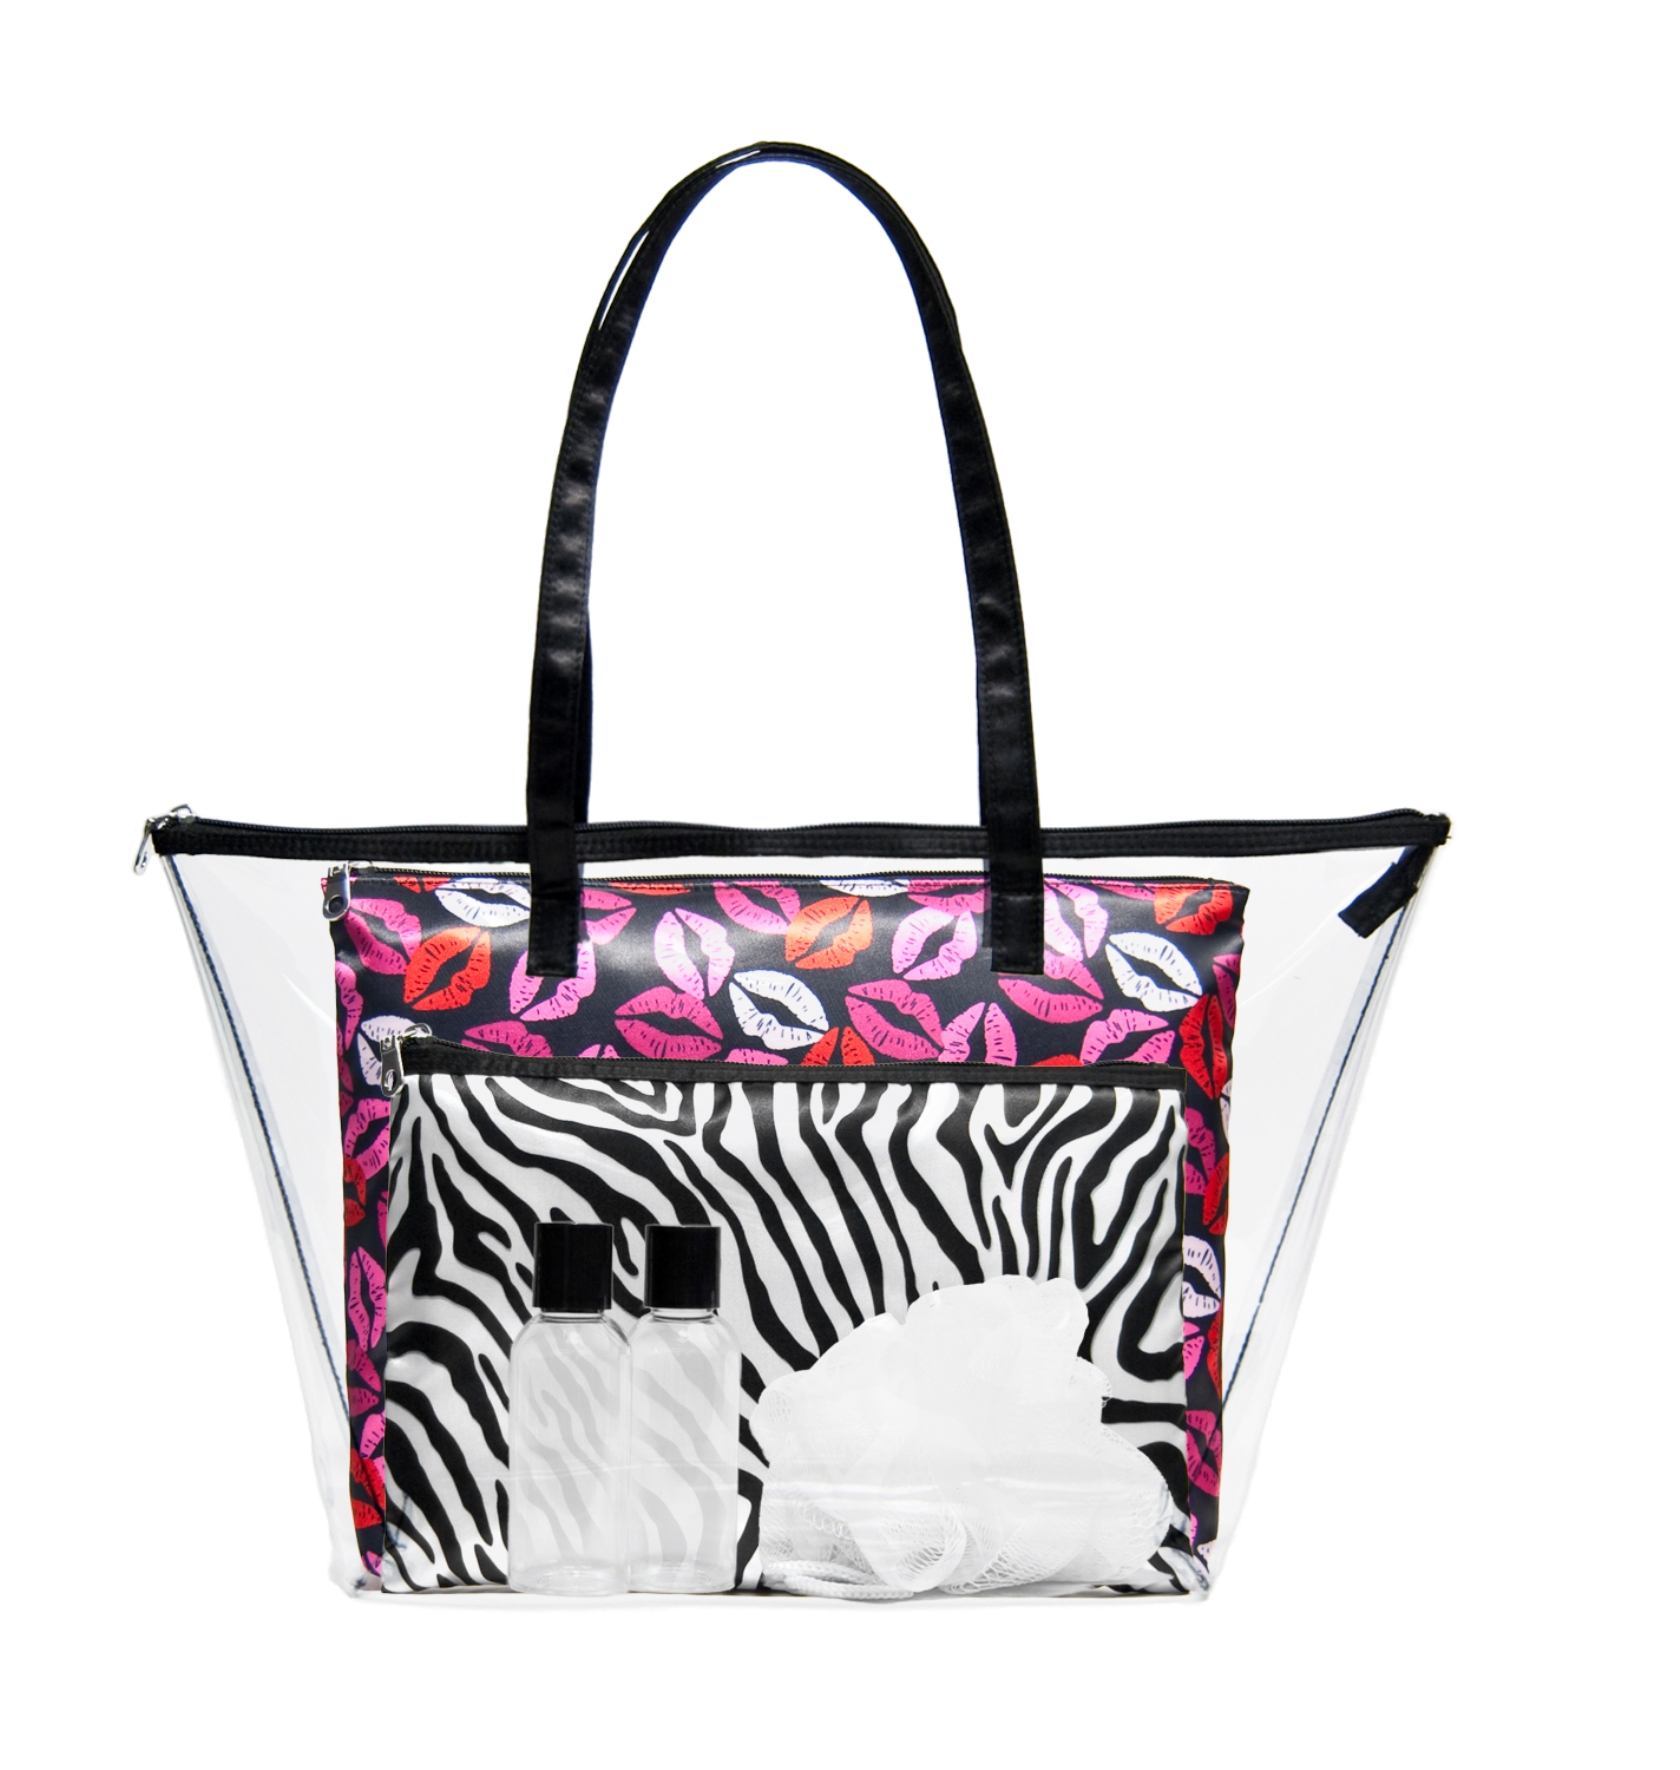 Blockbuster Black Zebra 18-inch Travel Tote Bag